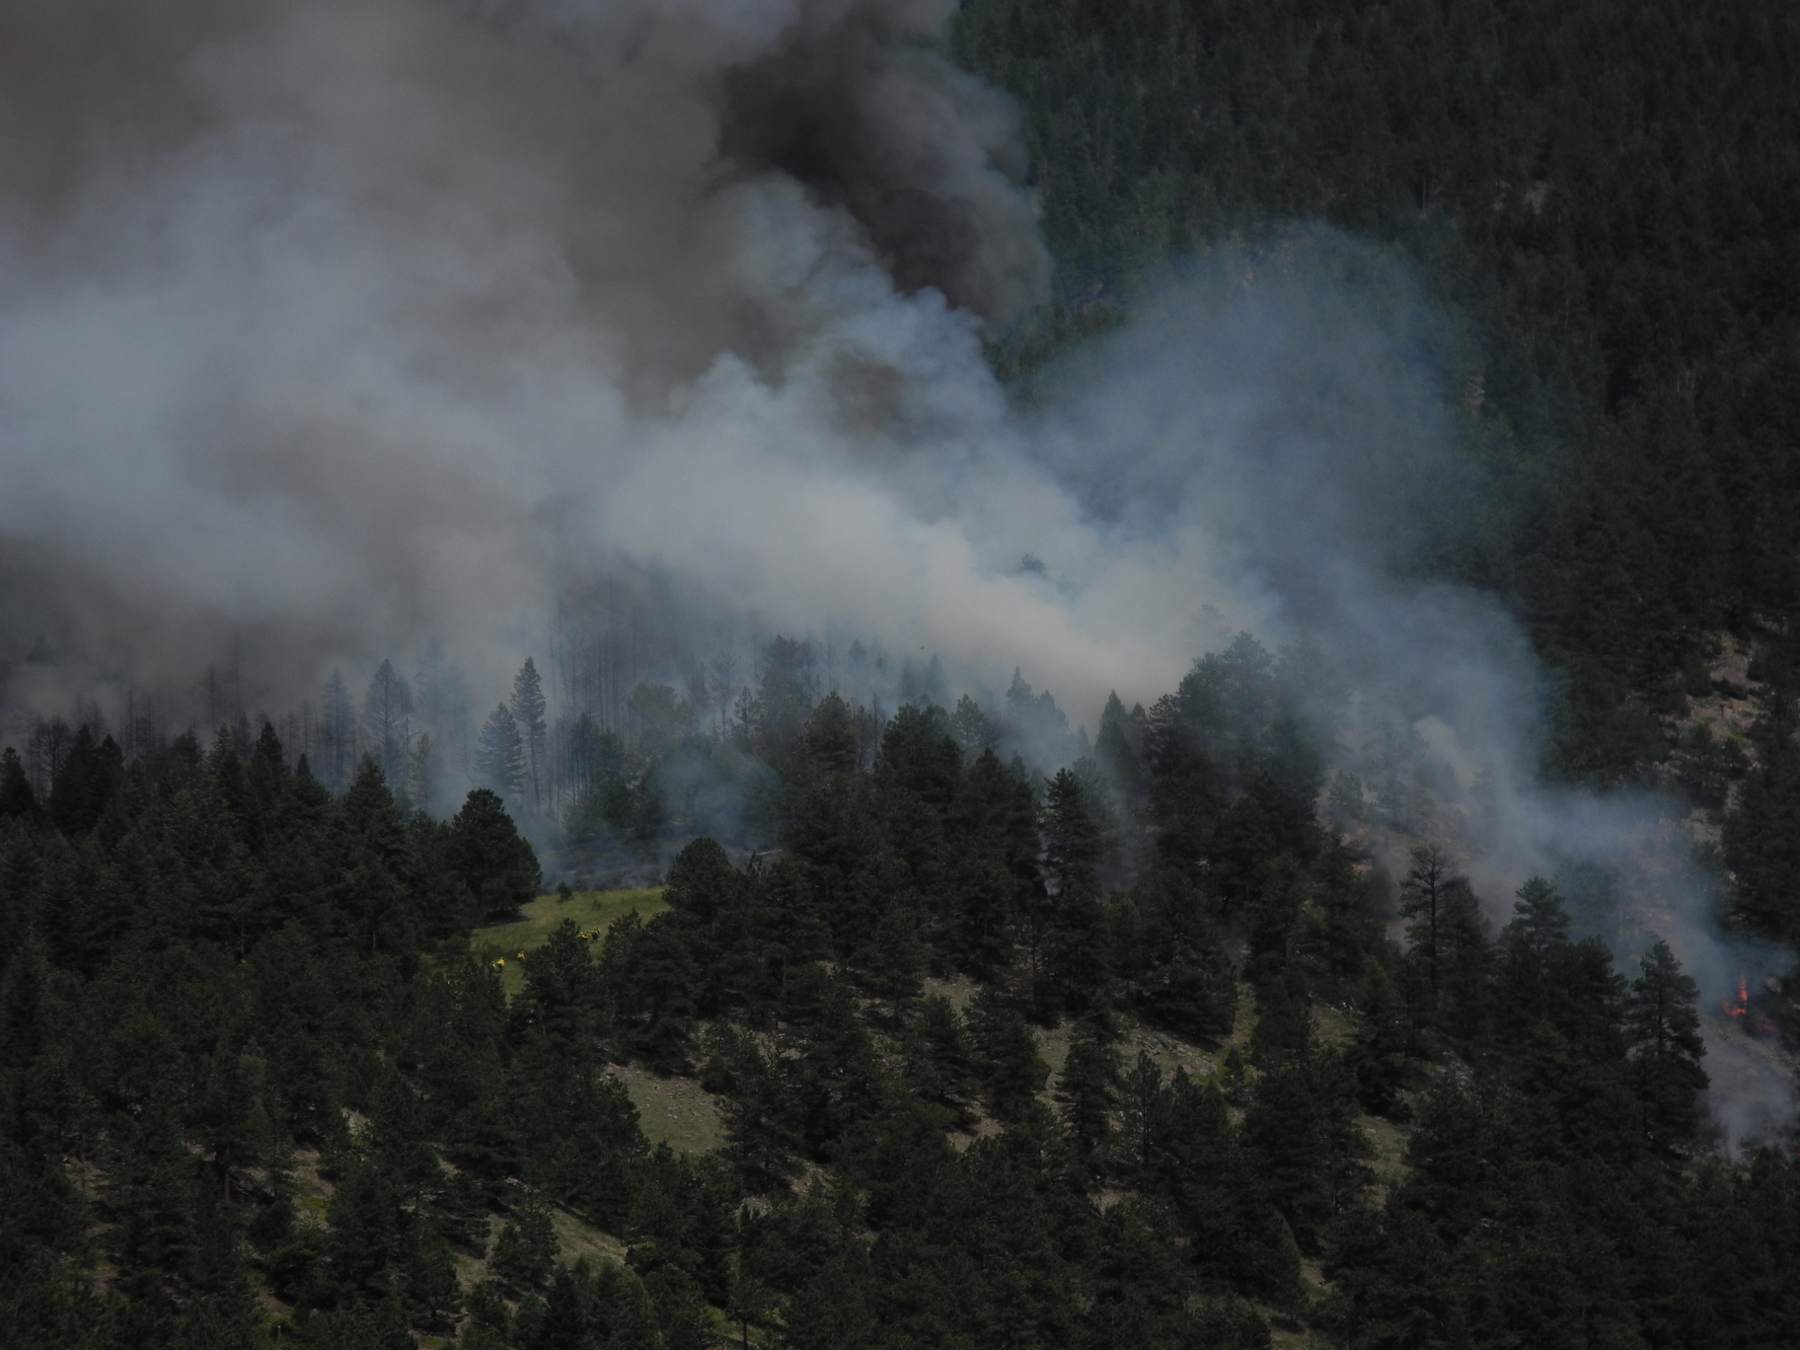 Flagstaff Fire, June 26th, 2012